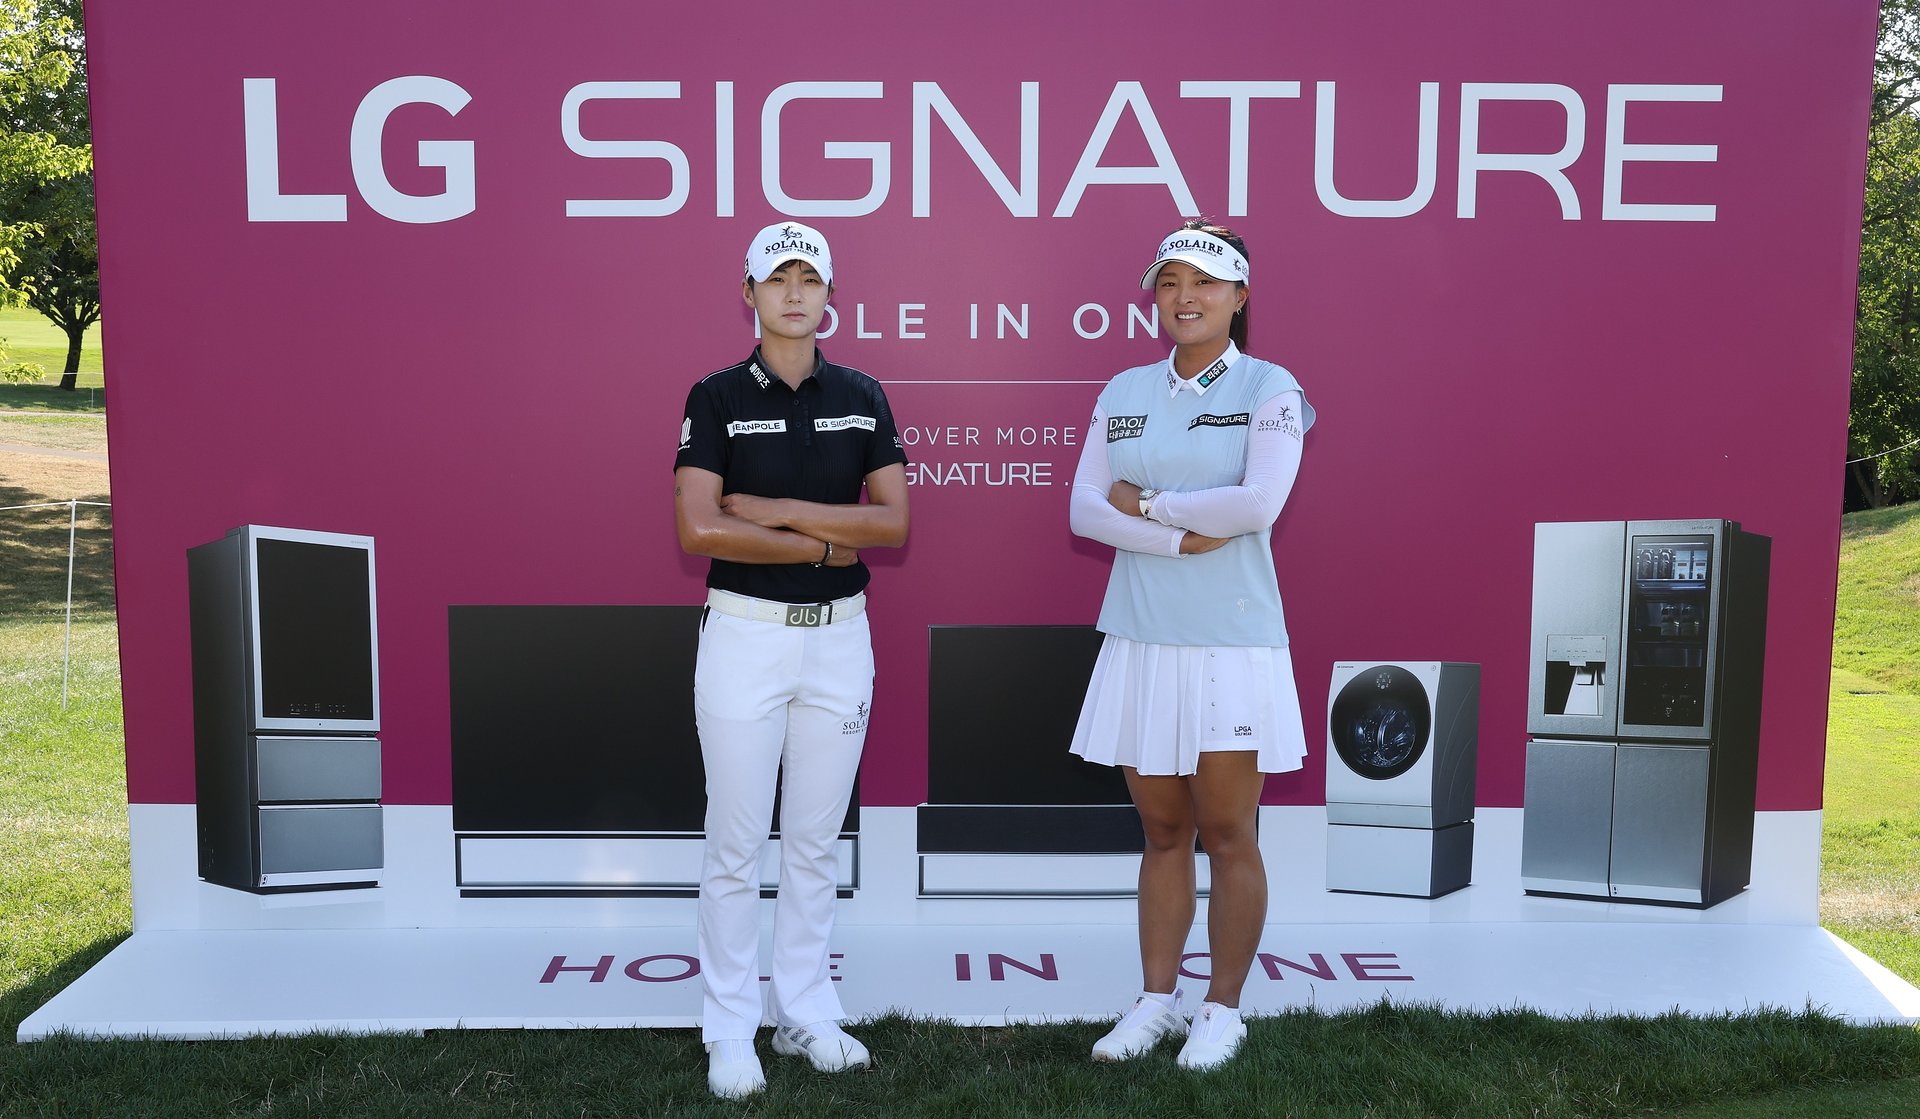 LG kontynuuje współpracę z LPGA (Ladies Professional Golf Association) jako oficjalny sponsor mistrzostw Amundi Evian